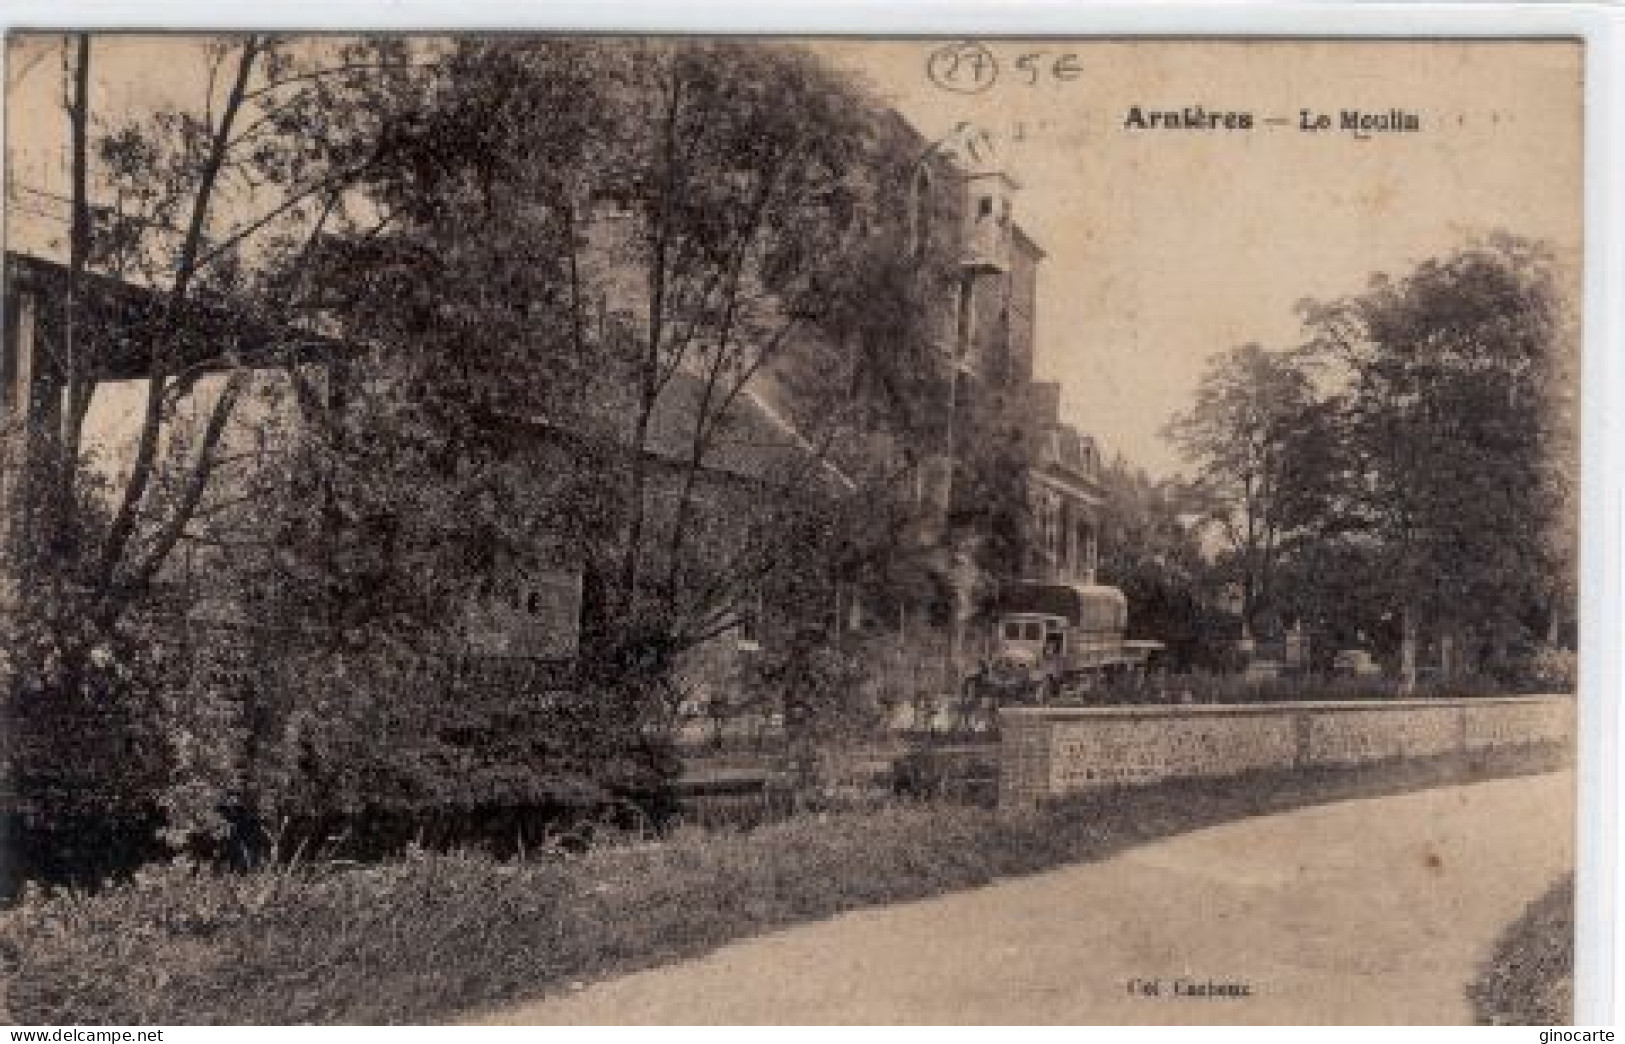 Arnieres Le Moulin - Arnières